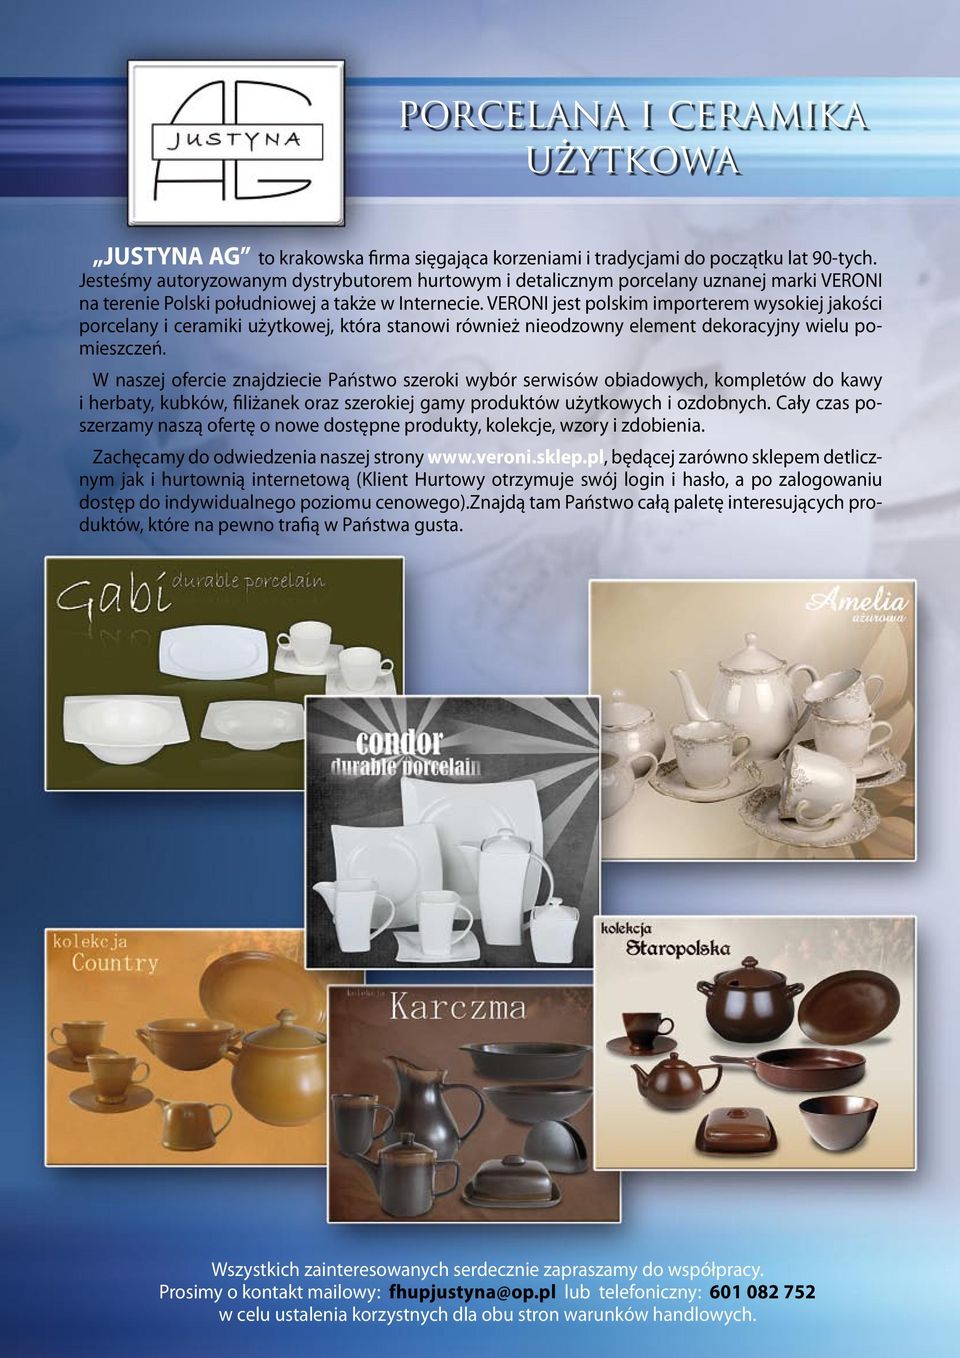 VERONI jest polskim importerem wysokiej jakości porcelany i ceramiki użytkowej, która stanowi również nieodzowny element dekoracyjny wielu pomieszczeń.